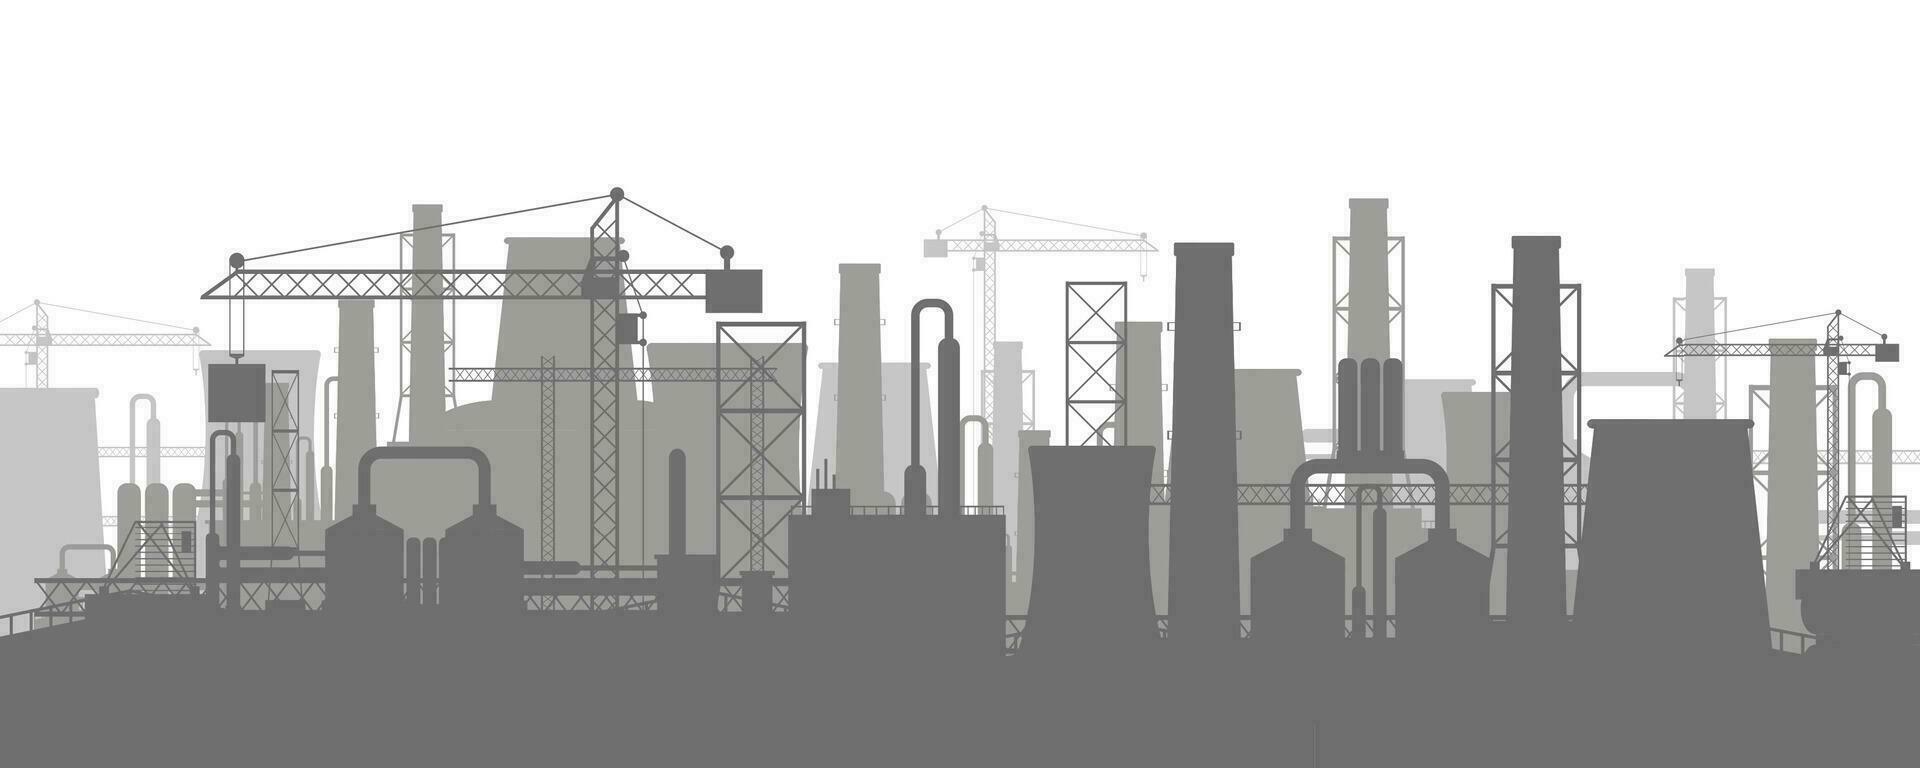 panoramique industriel silhouette paysage. vecteur